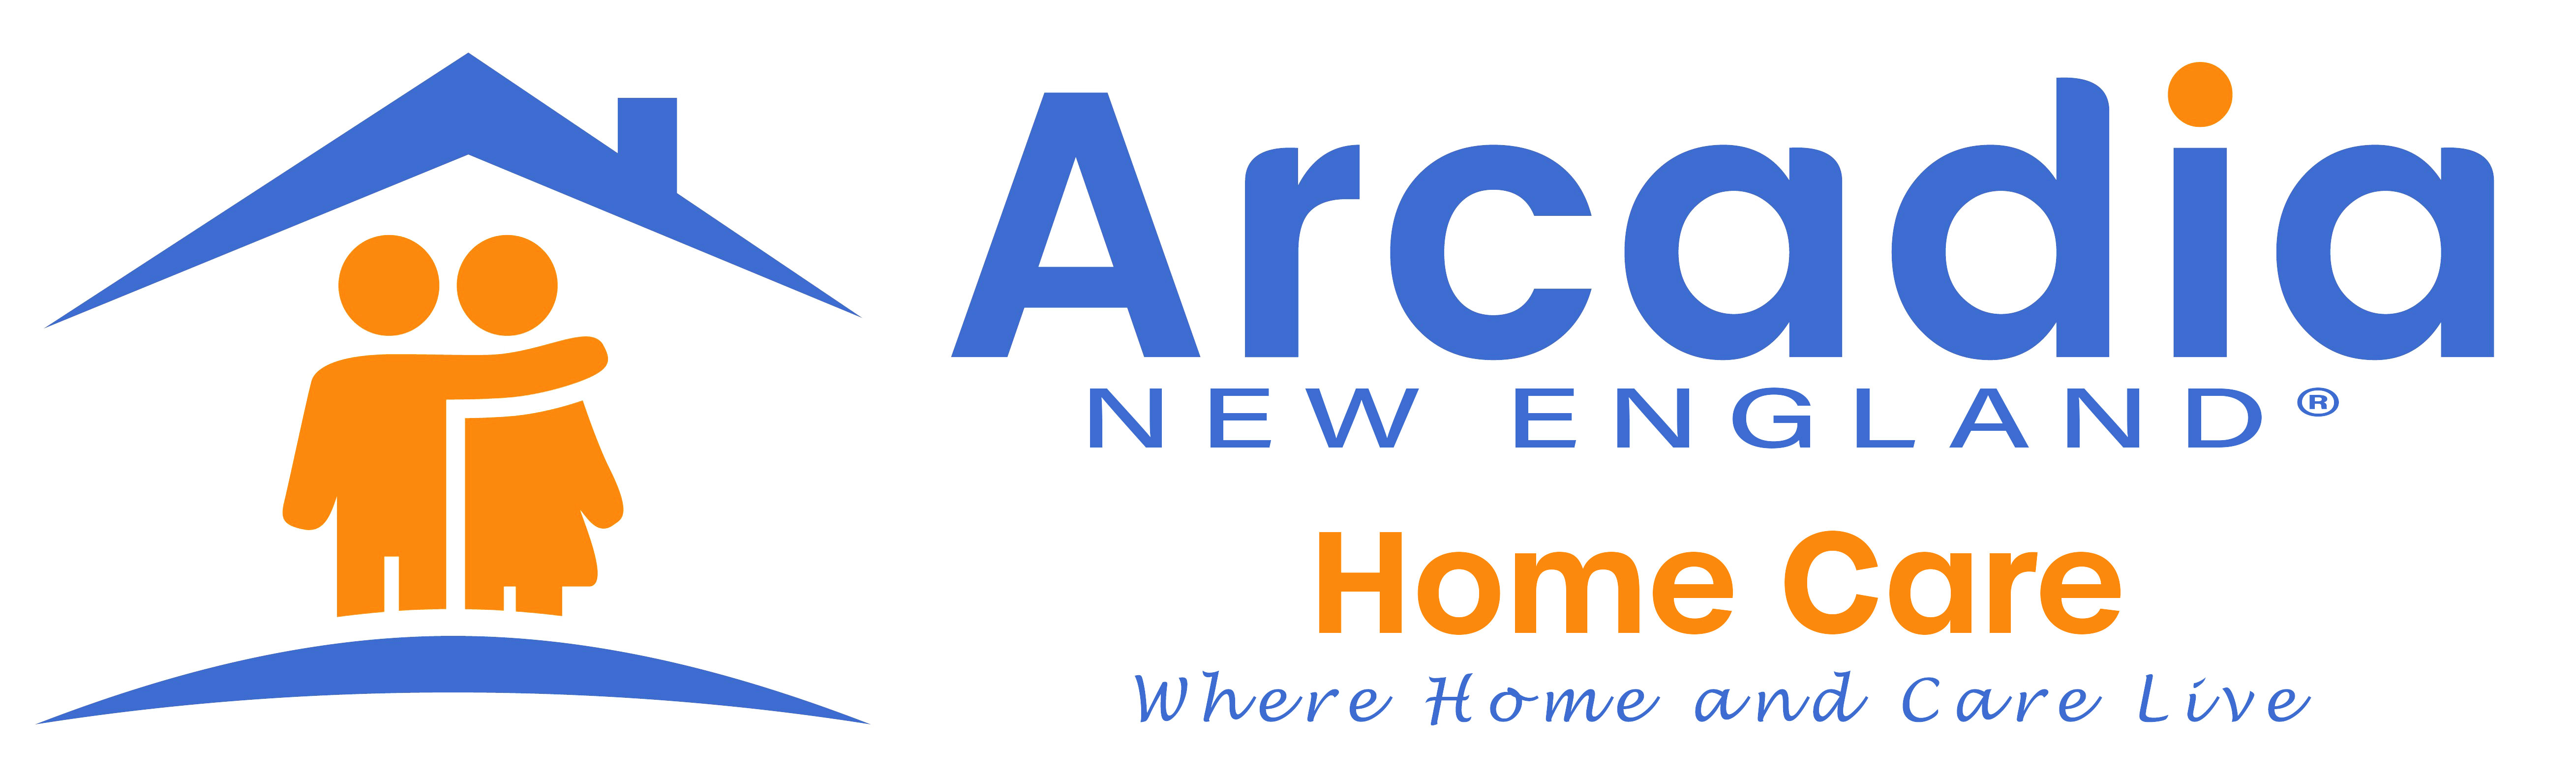 Arcadia New England Home Care